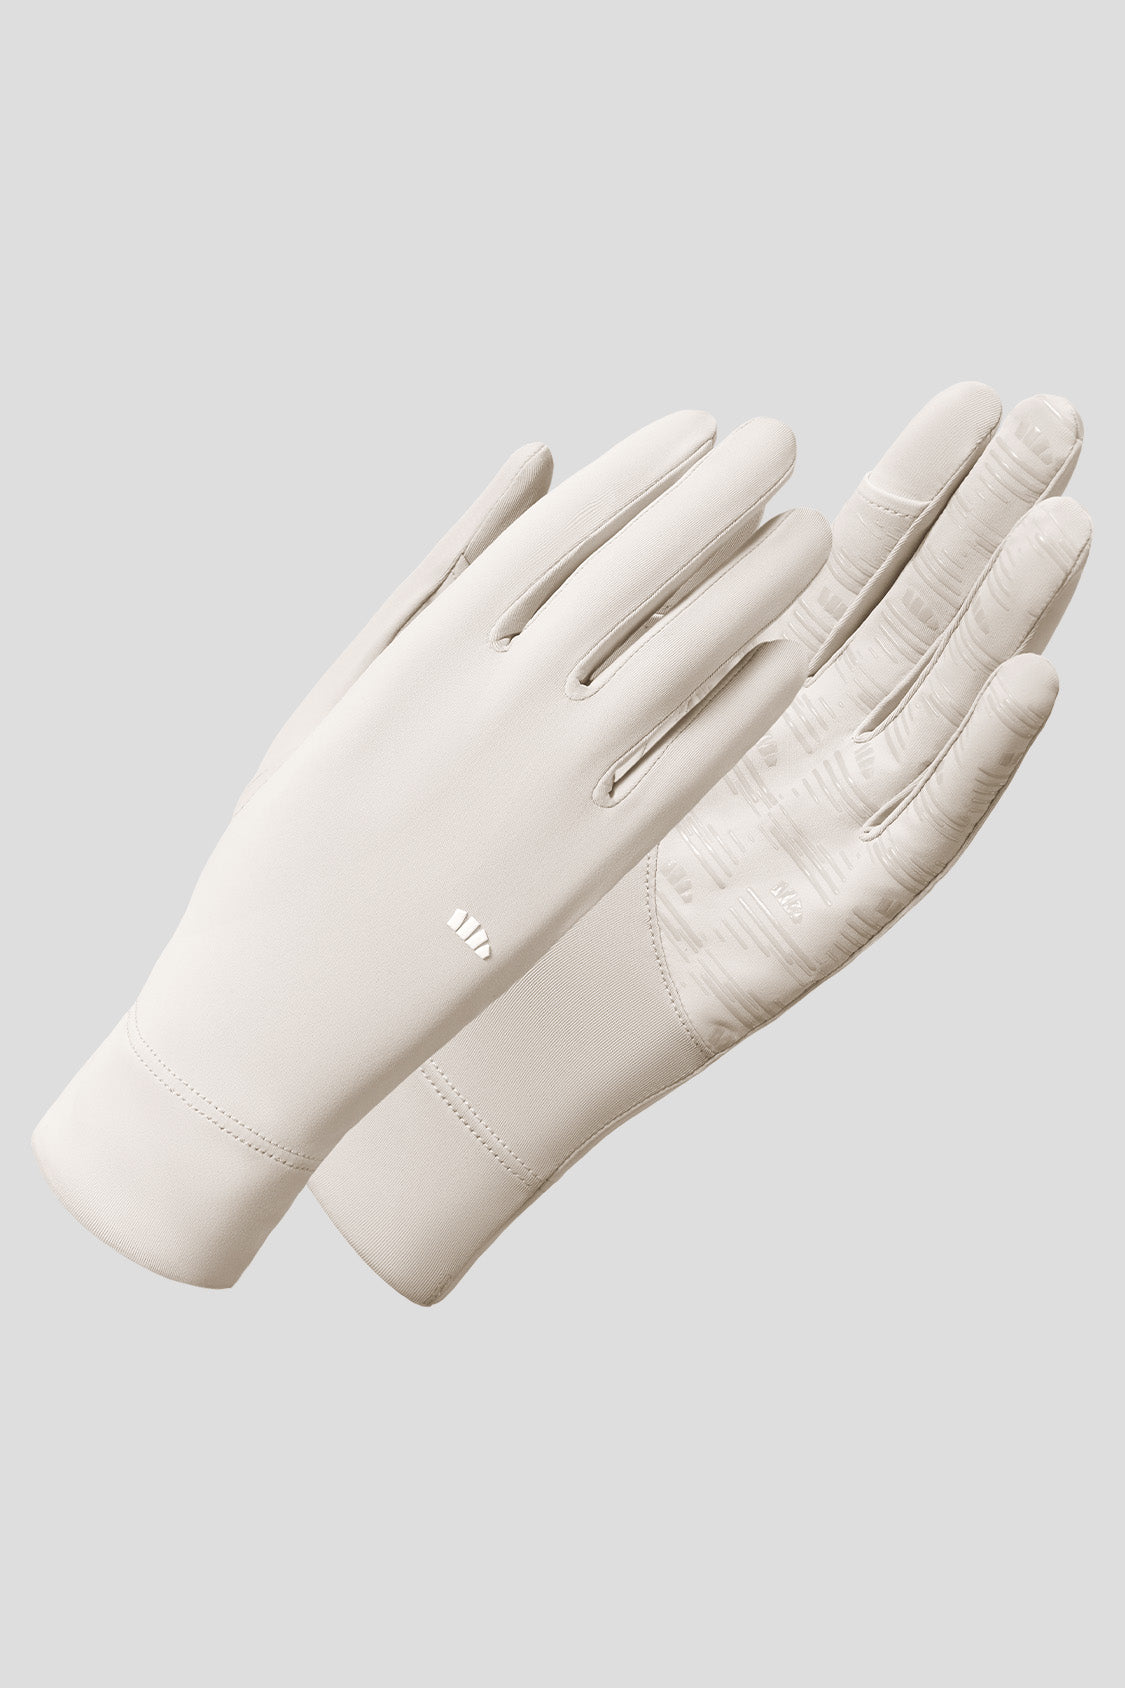 Aicee - Women's Sun Protection Gloves UPF50+